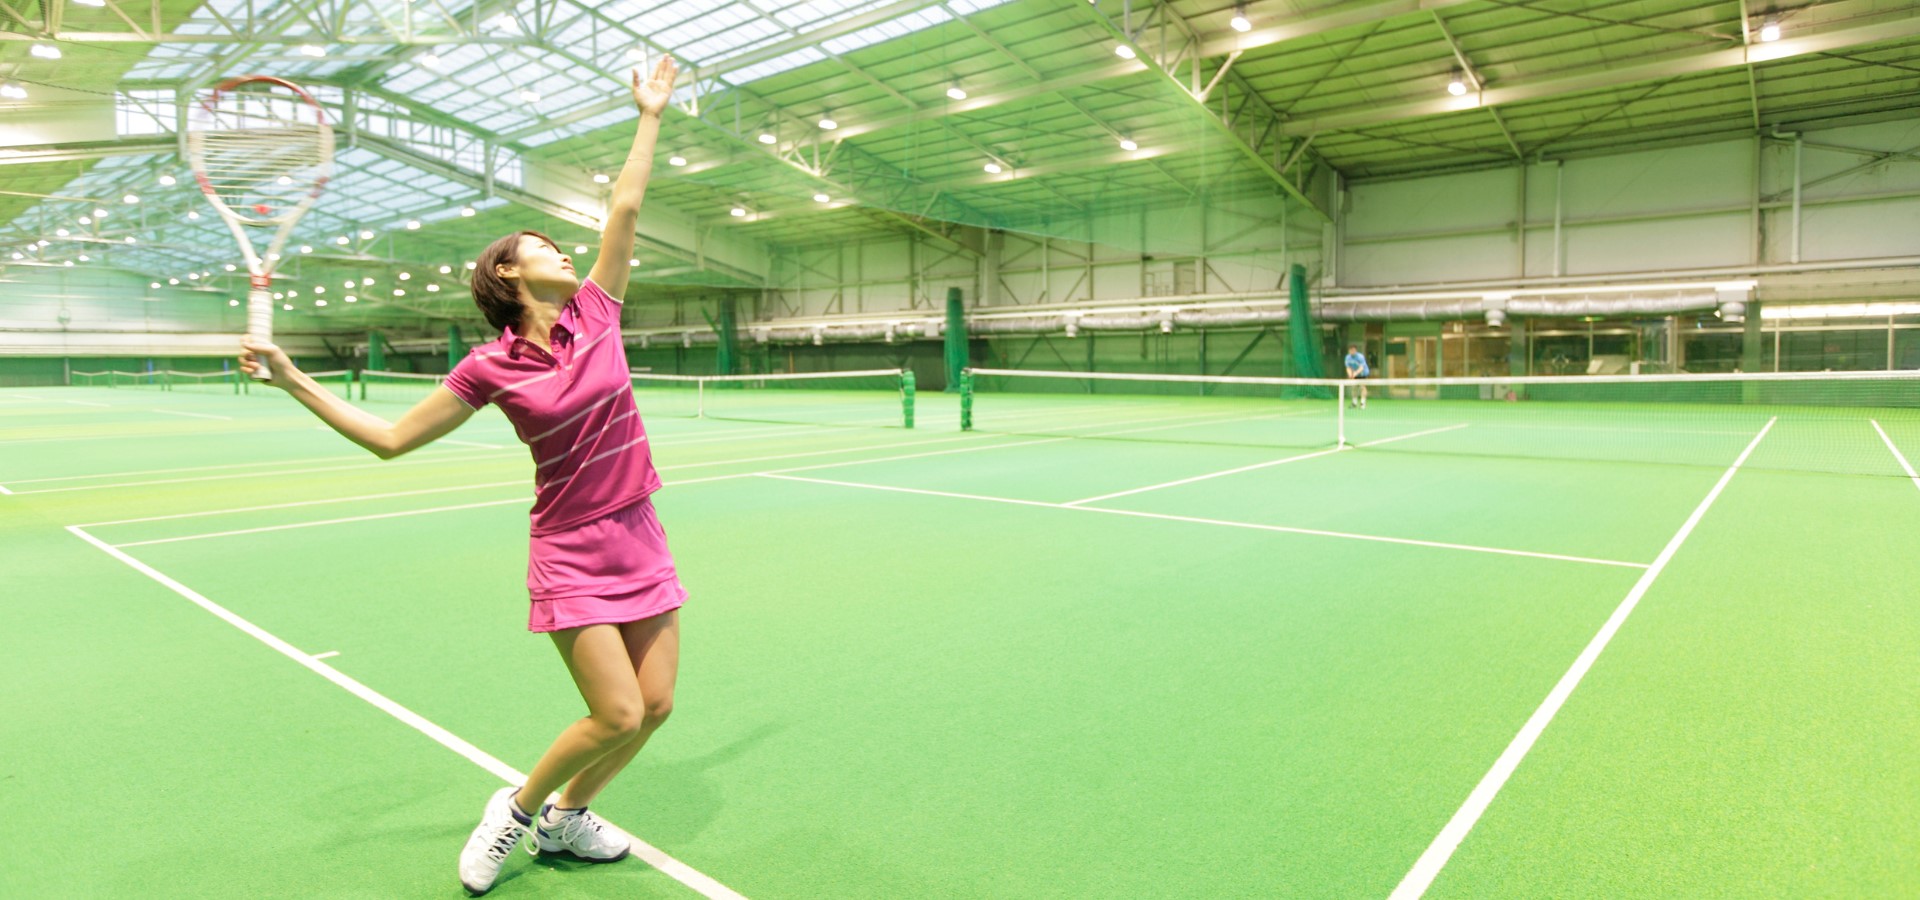 Takanawa Tennis Center